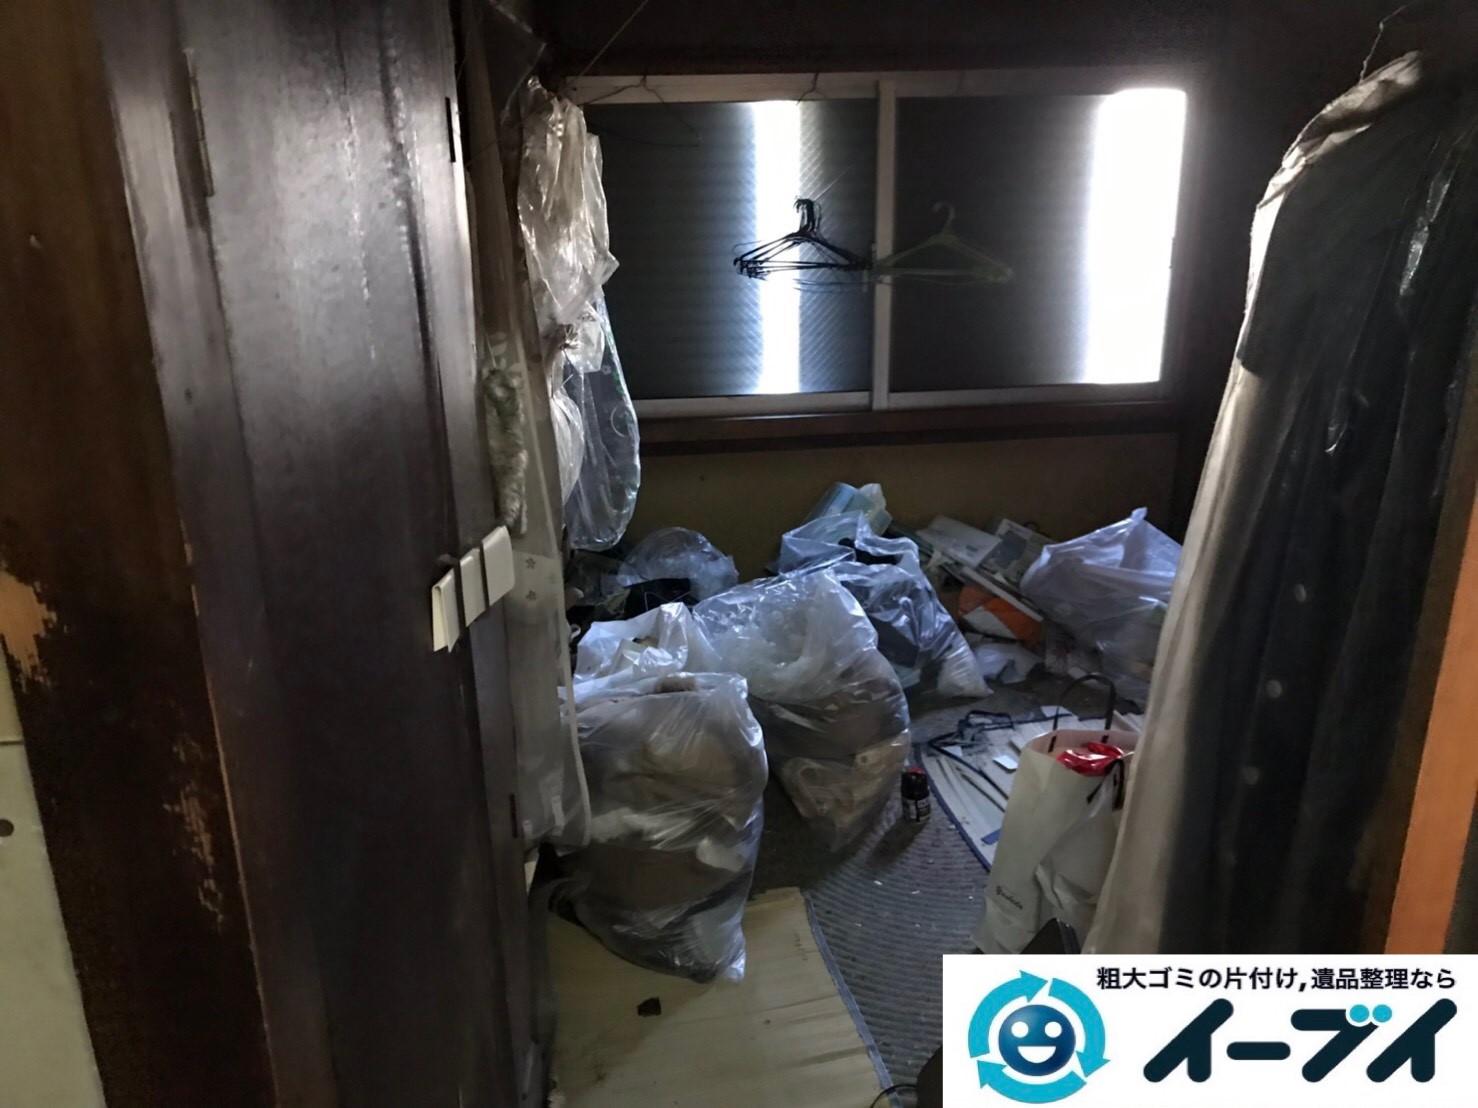 2019年8月6日大阪府大阪市平野区でソファの家具処分、衣類や細かな生活用品の不用品回収。写真1